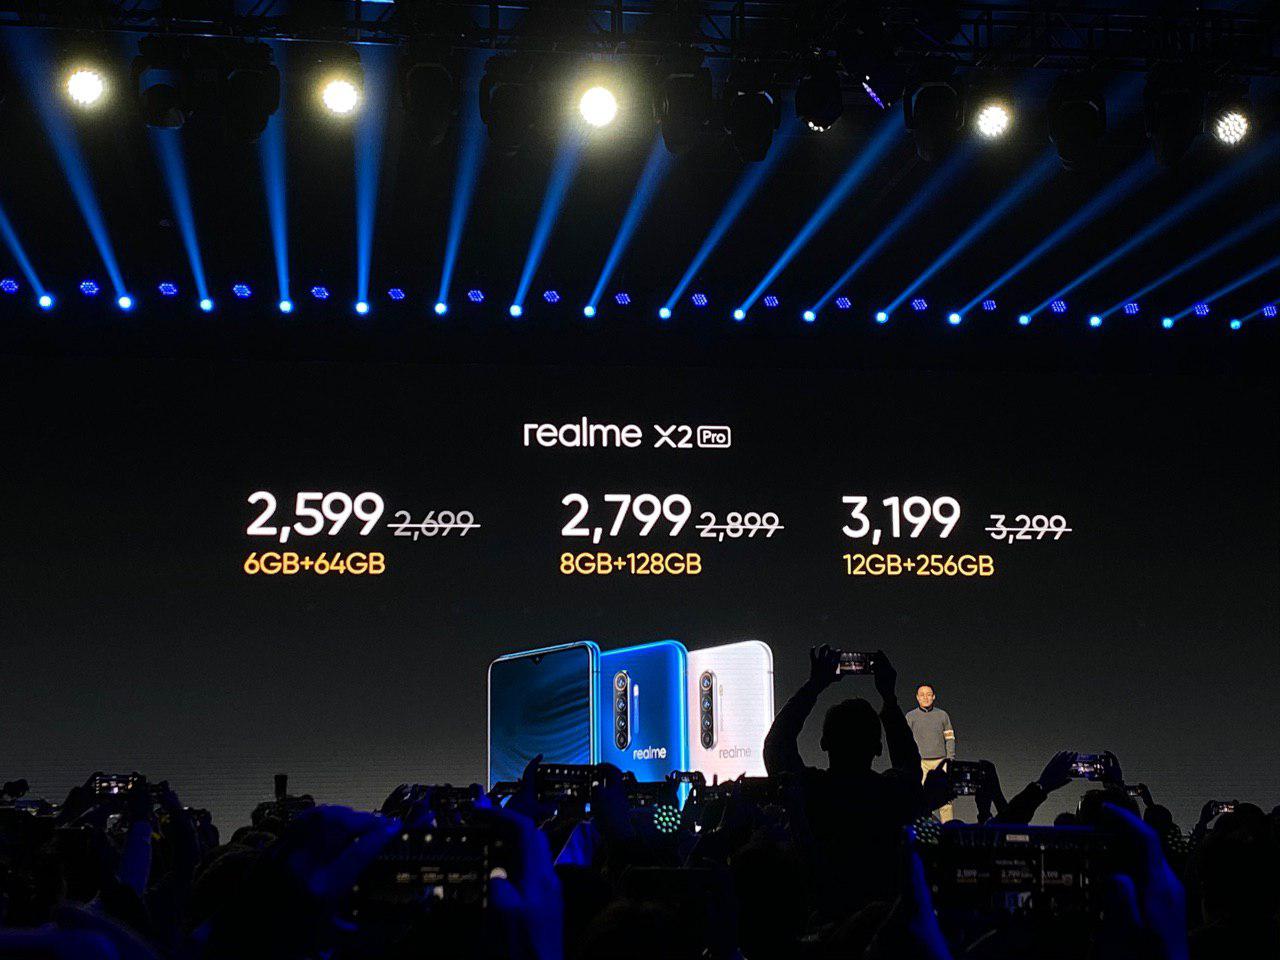 Все и сразу. Realme X2 Pro предлагает Snapdragon 855+, экран 90 Гц, 64-Мп камеру, NFC, стереодинамики и 50-ваттную зарядку при цене $380